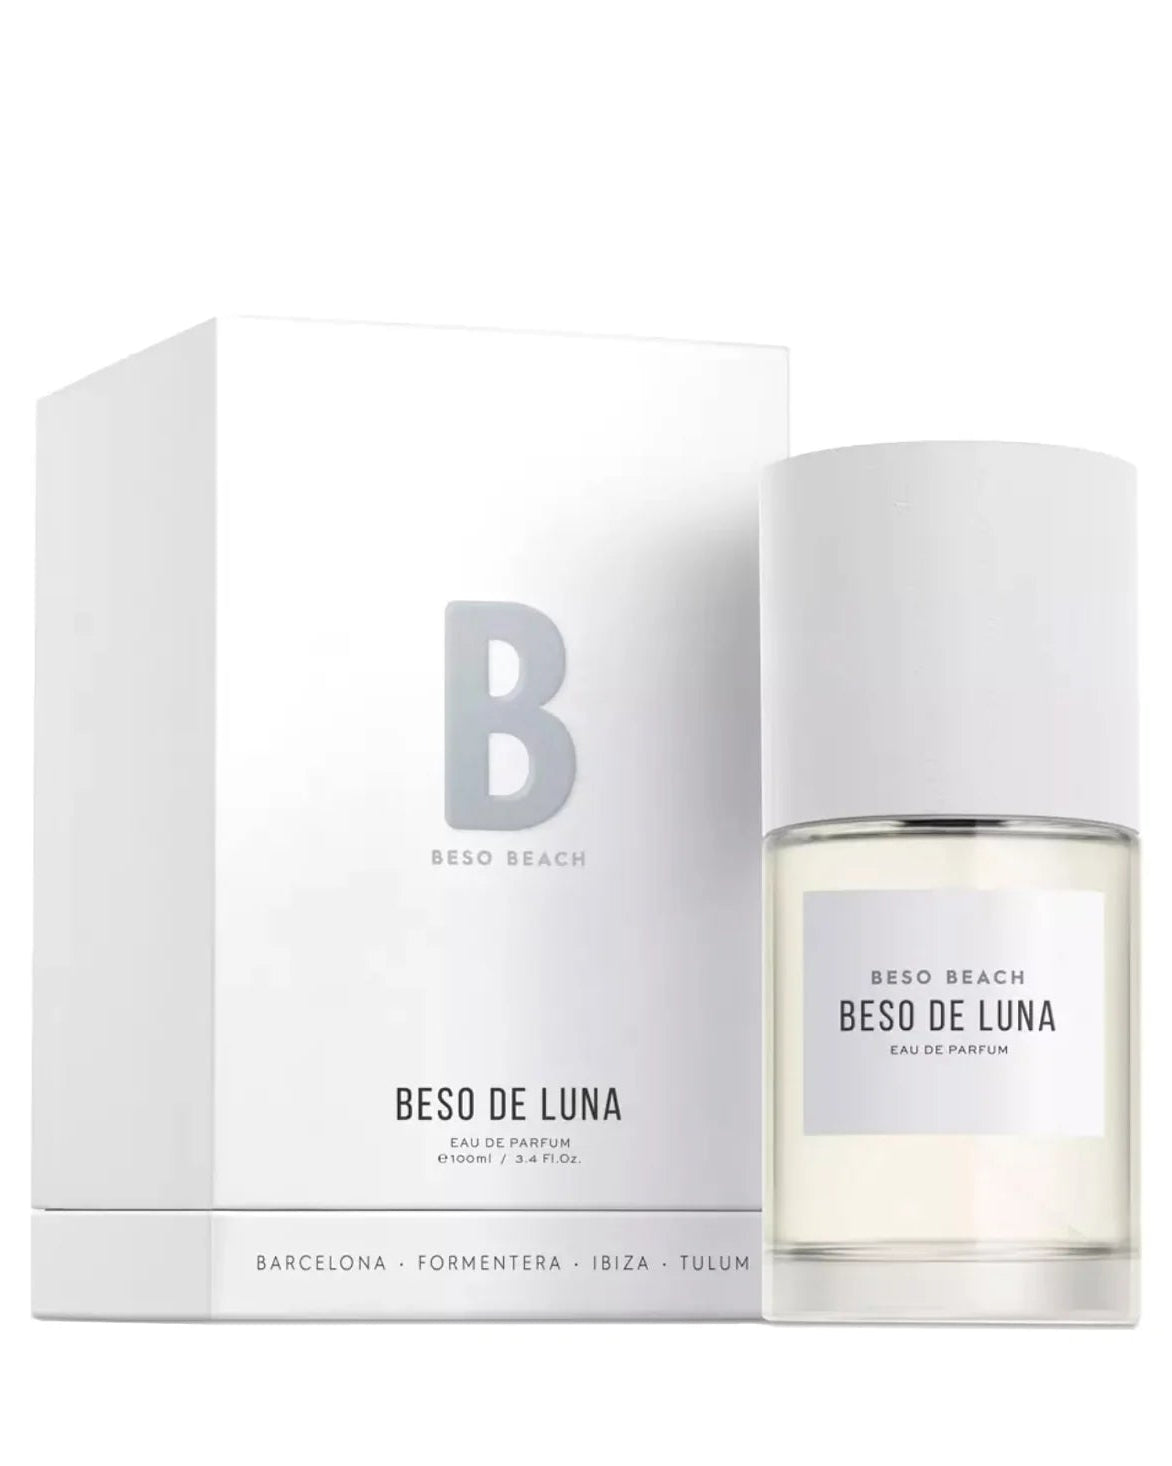 Beso De Luna Eau de Parfum - Men's Fragrance at Menzclub